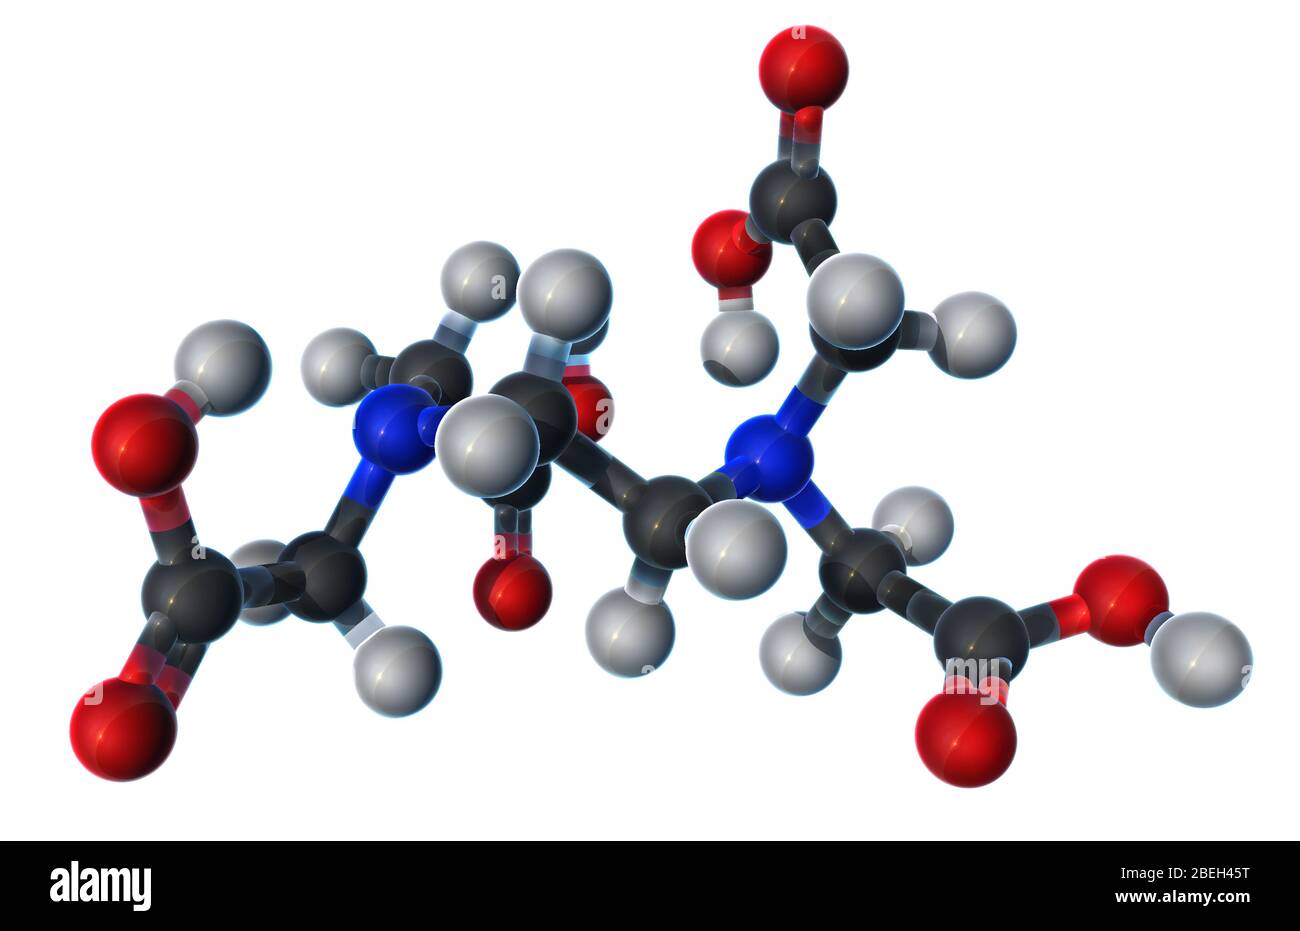 Un modèle moléculaire d'acide éthylènediaminetétraacétique (EDTA), solide incolore et soluble dans l'eau utilisé dans le traitement par chélation pour traiter le mercure et l'empoisonnement au plomb. L'EDTA a également été utilisé comme antioxydant et conservateur alimentaire, et peut également être trouvé dans les produits de soins personnels et de nettoyage. Les atomes sont de couleur gris foncé (carbone), gris clair (hydrogène), rouge (oxygène) et bleu (azote). Banque D'Images